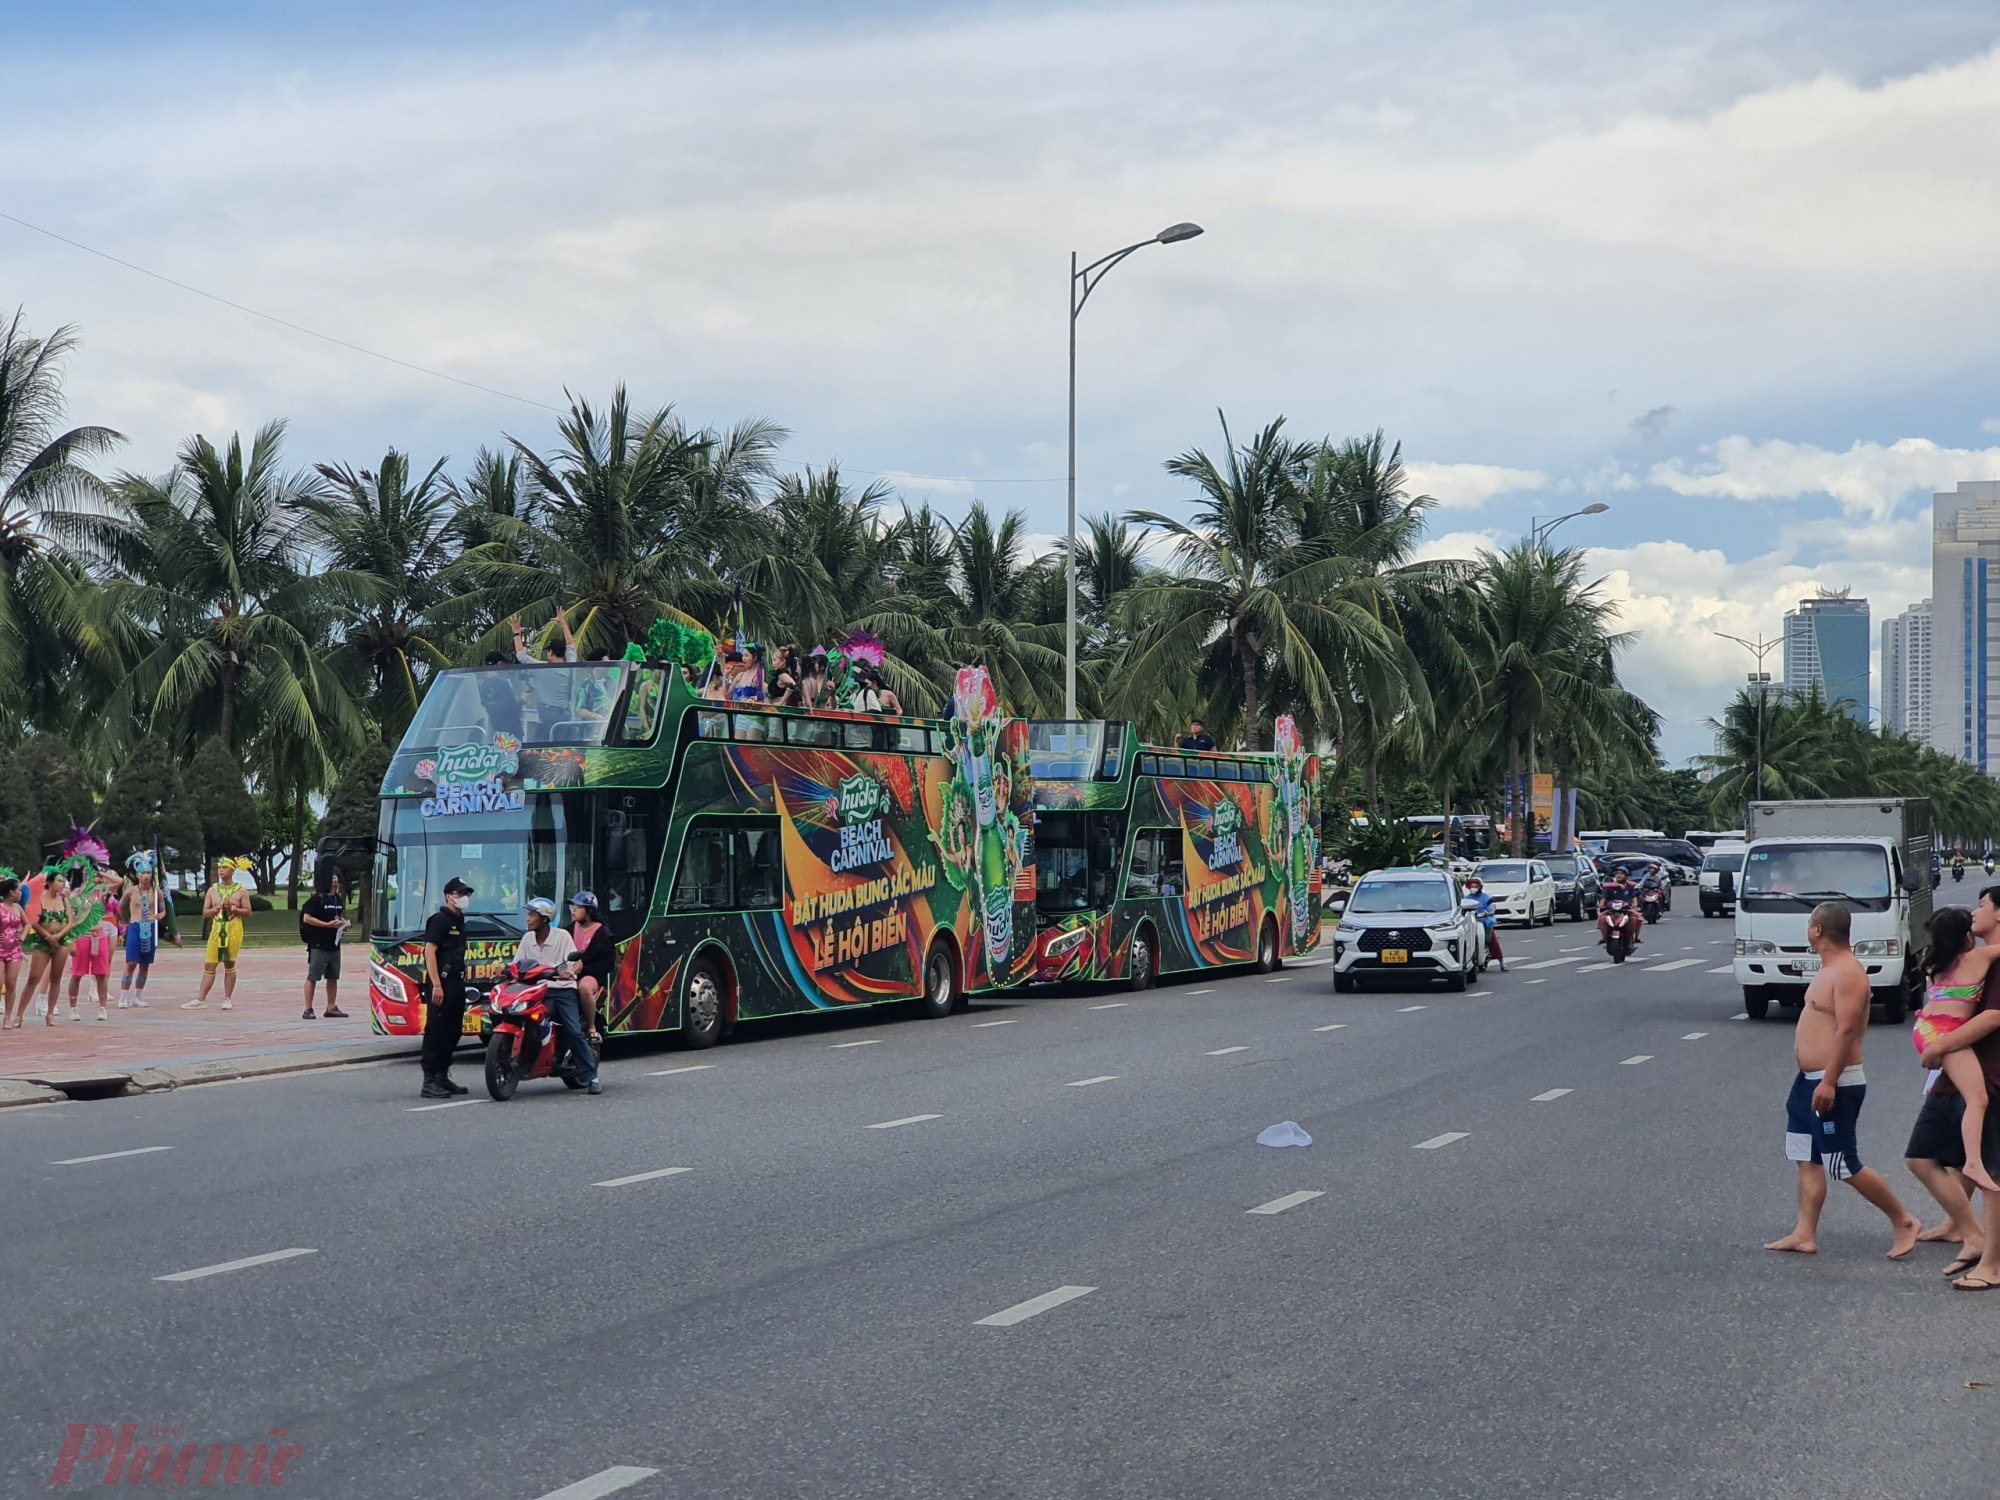 Là thành phố du lịch, Đà Nẵng cần hướng tới các phương tiện giao thông công cộng thân thiện cũng như tăng cường phát triển hệ thống giao thông tĩnh hợp lý